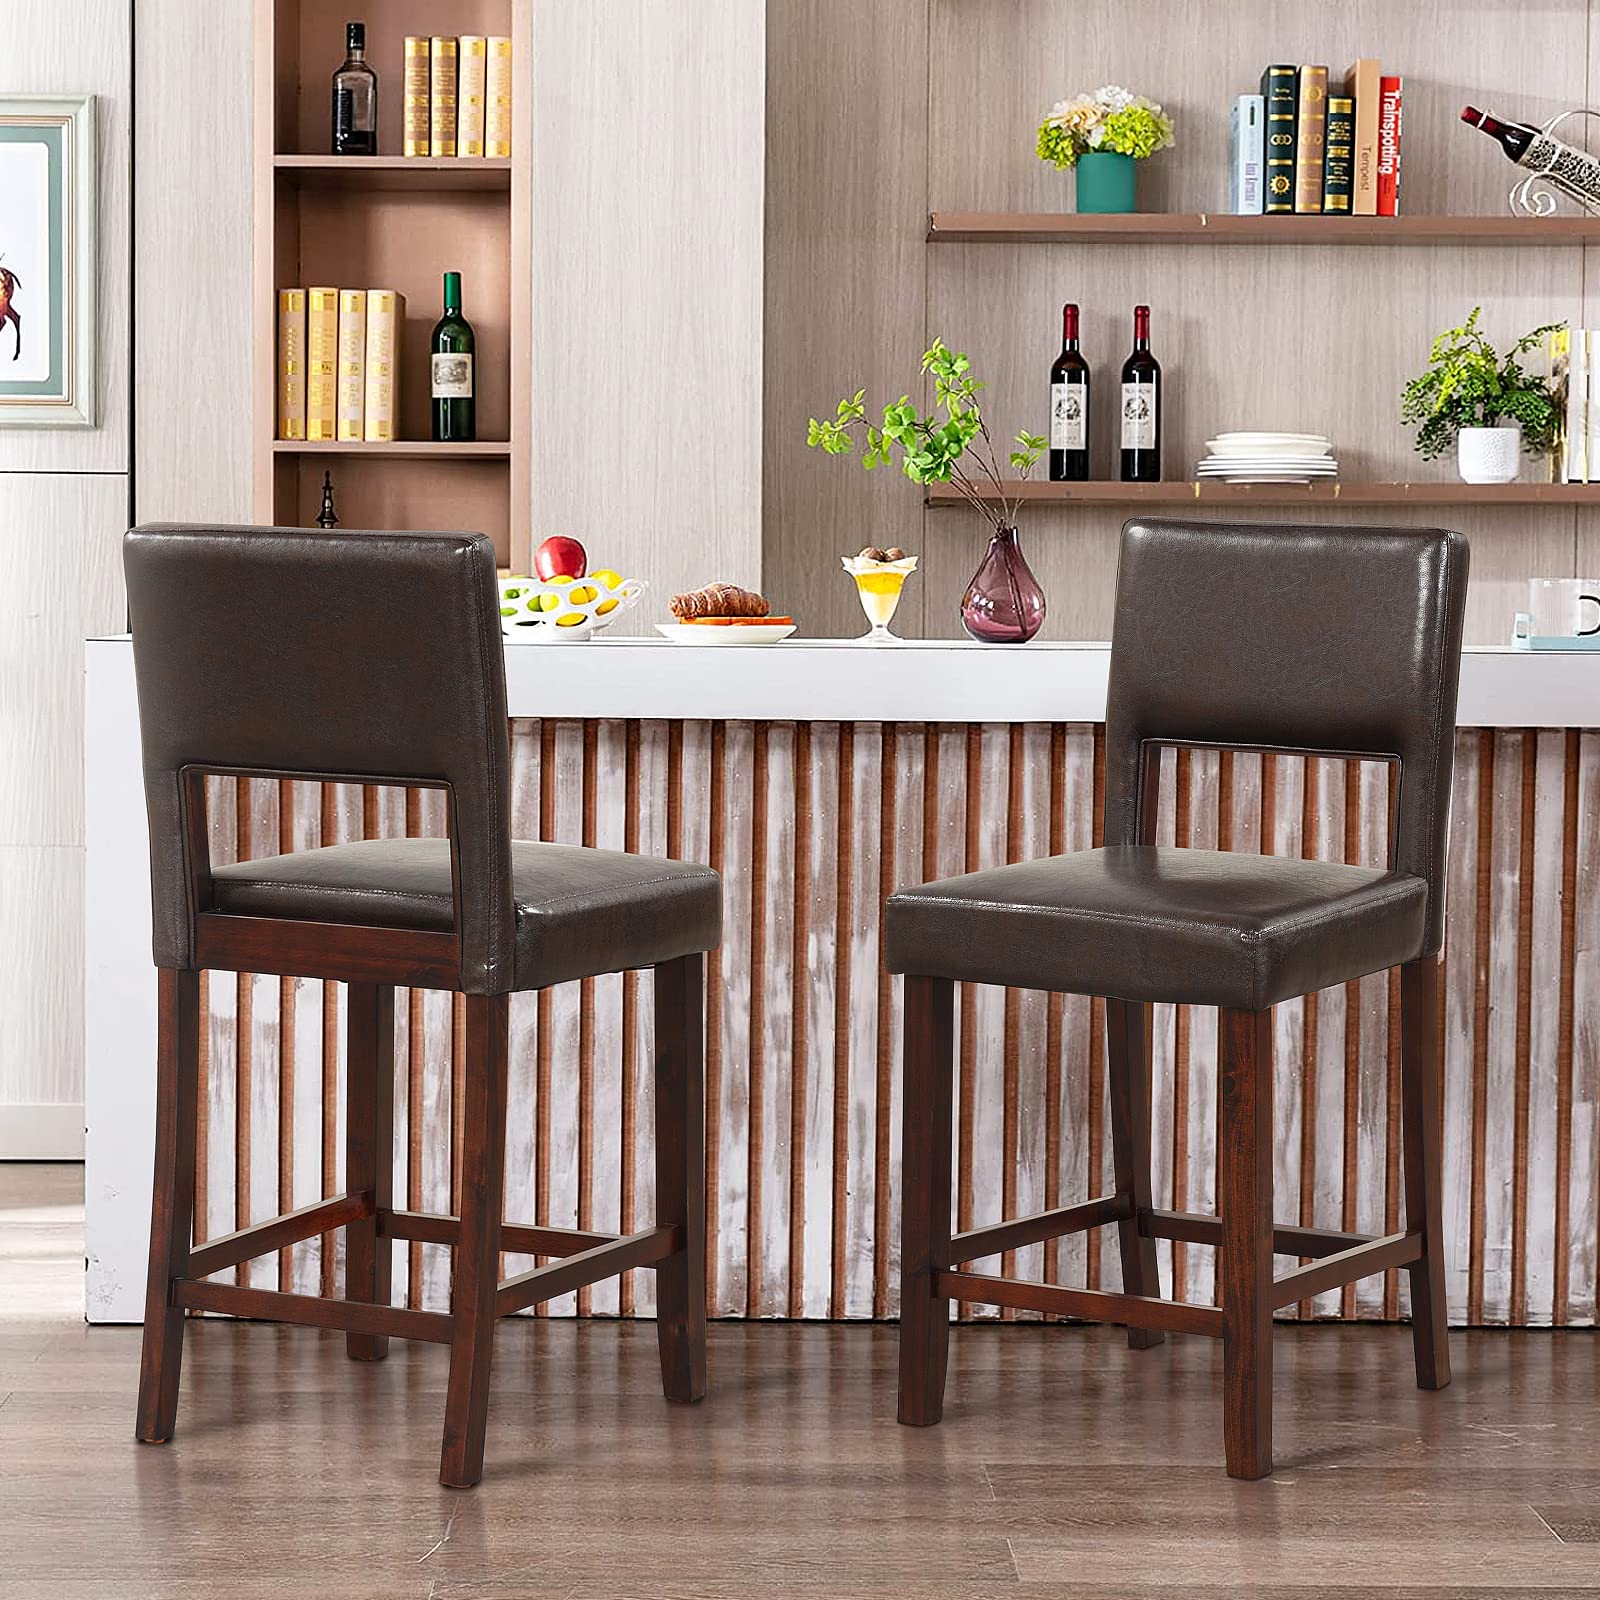 Giantex 4-Piece Bar Chair Set - Linen Counter Height Bar Stool Set with Hollowed Back & Rubber Wood Legs